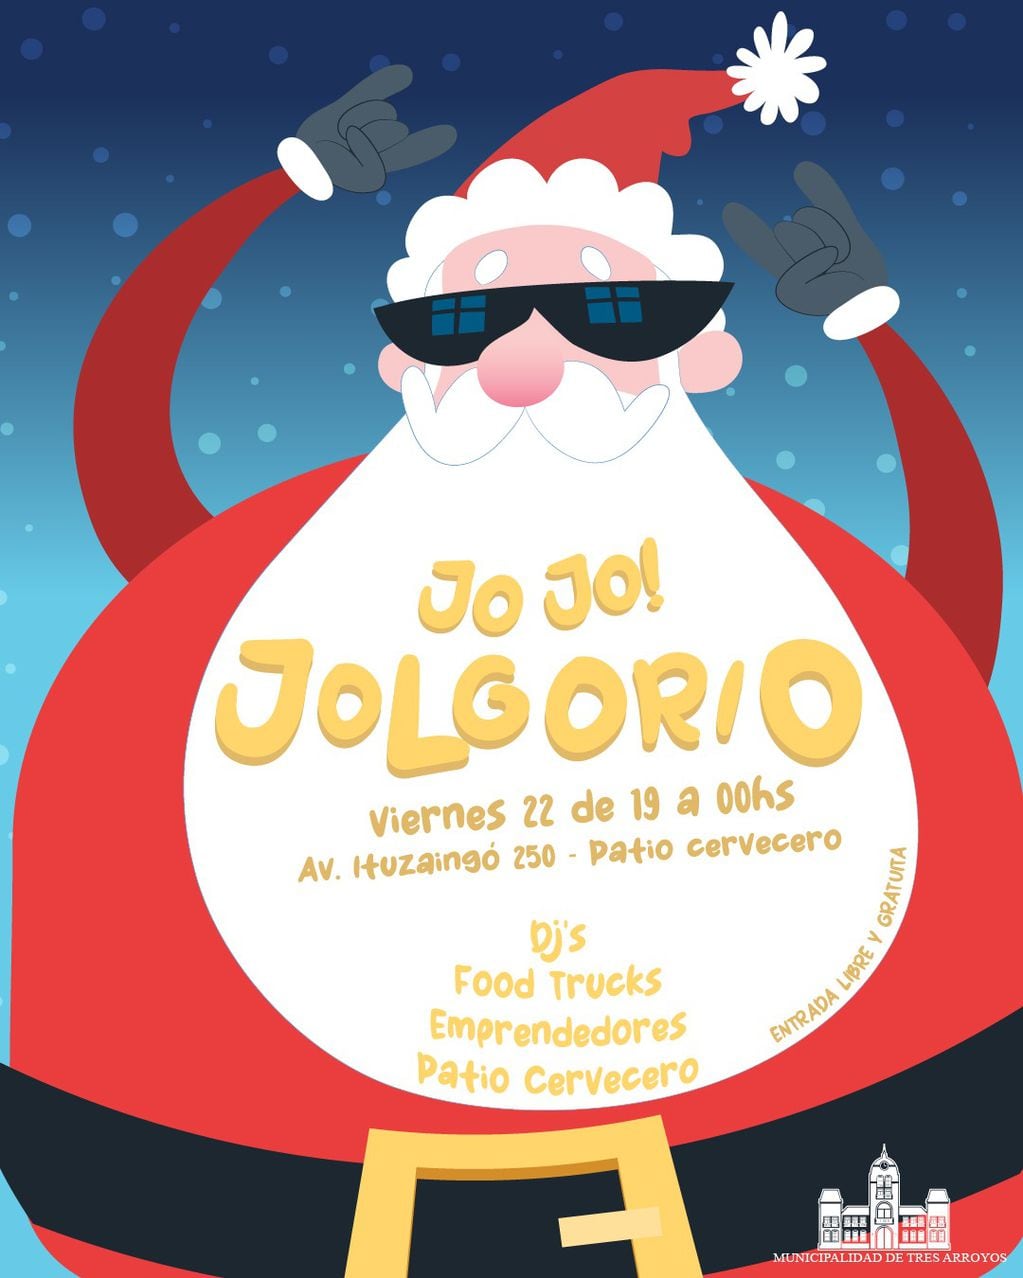 “Jo jo Jolgorio” se llevará a cabo el próximo viernes 22 de diciembre en el Patio Cervecero.